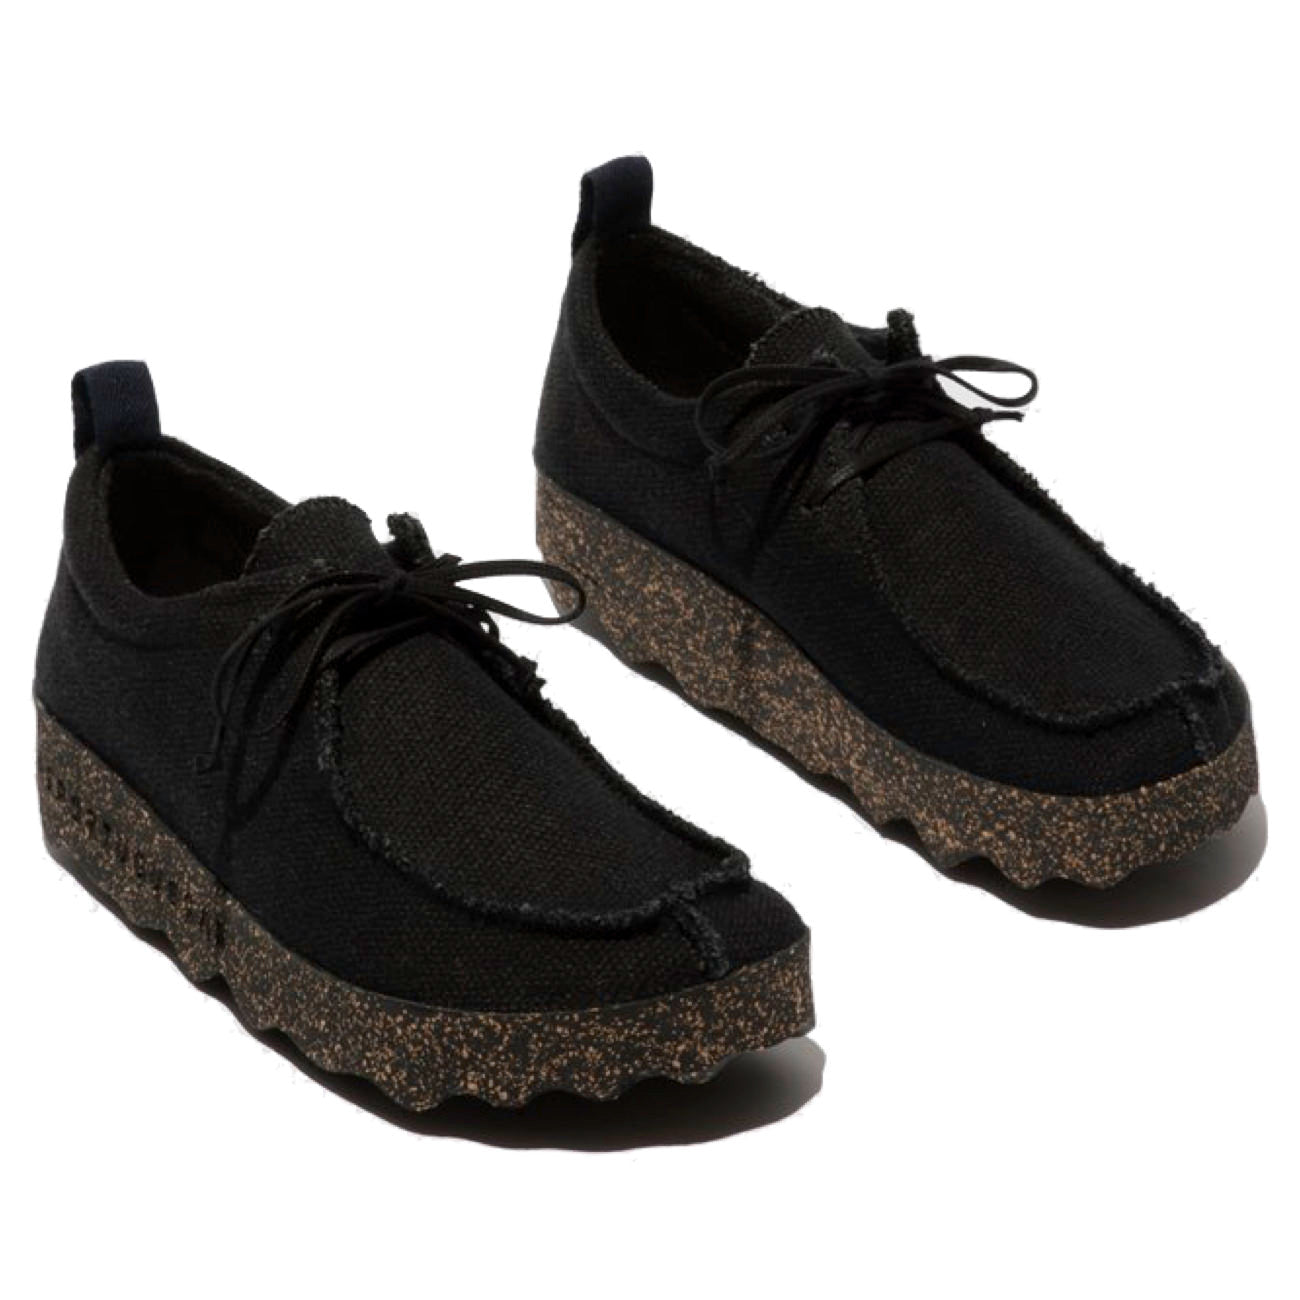 Asportuguesus, AS21 Chat, Laceup Shoes, Black Linen & Black sole Shoes Asportuguesas Black Linen & Black sole 37 